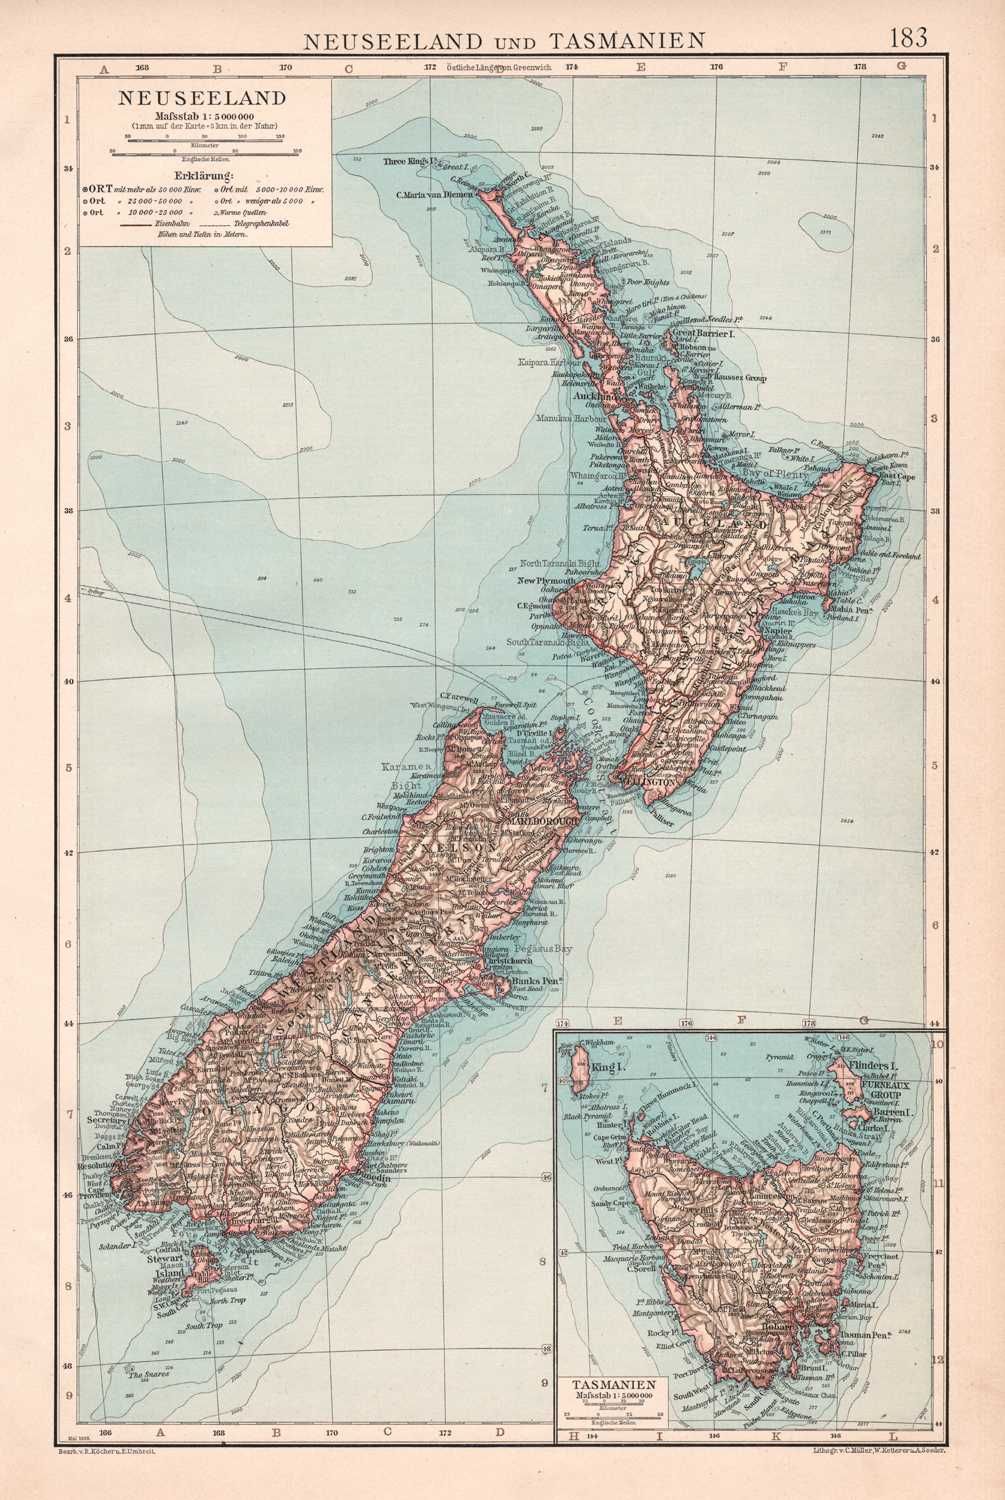 Nowa Zelandia Tasmania stara mapa 1905 r. autentyk